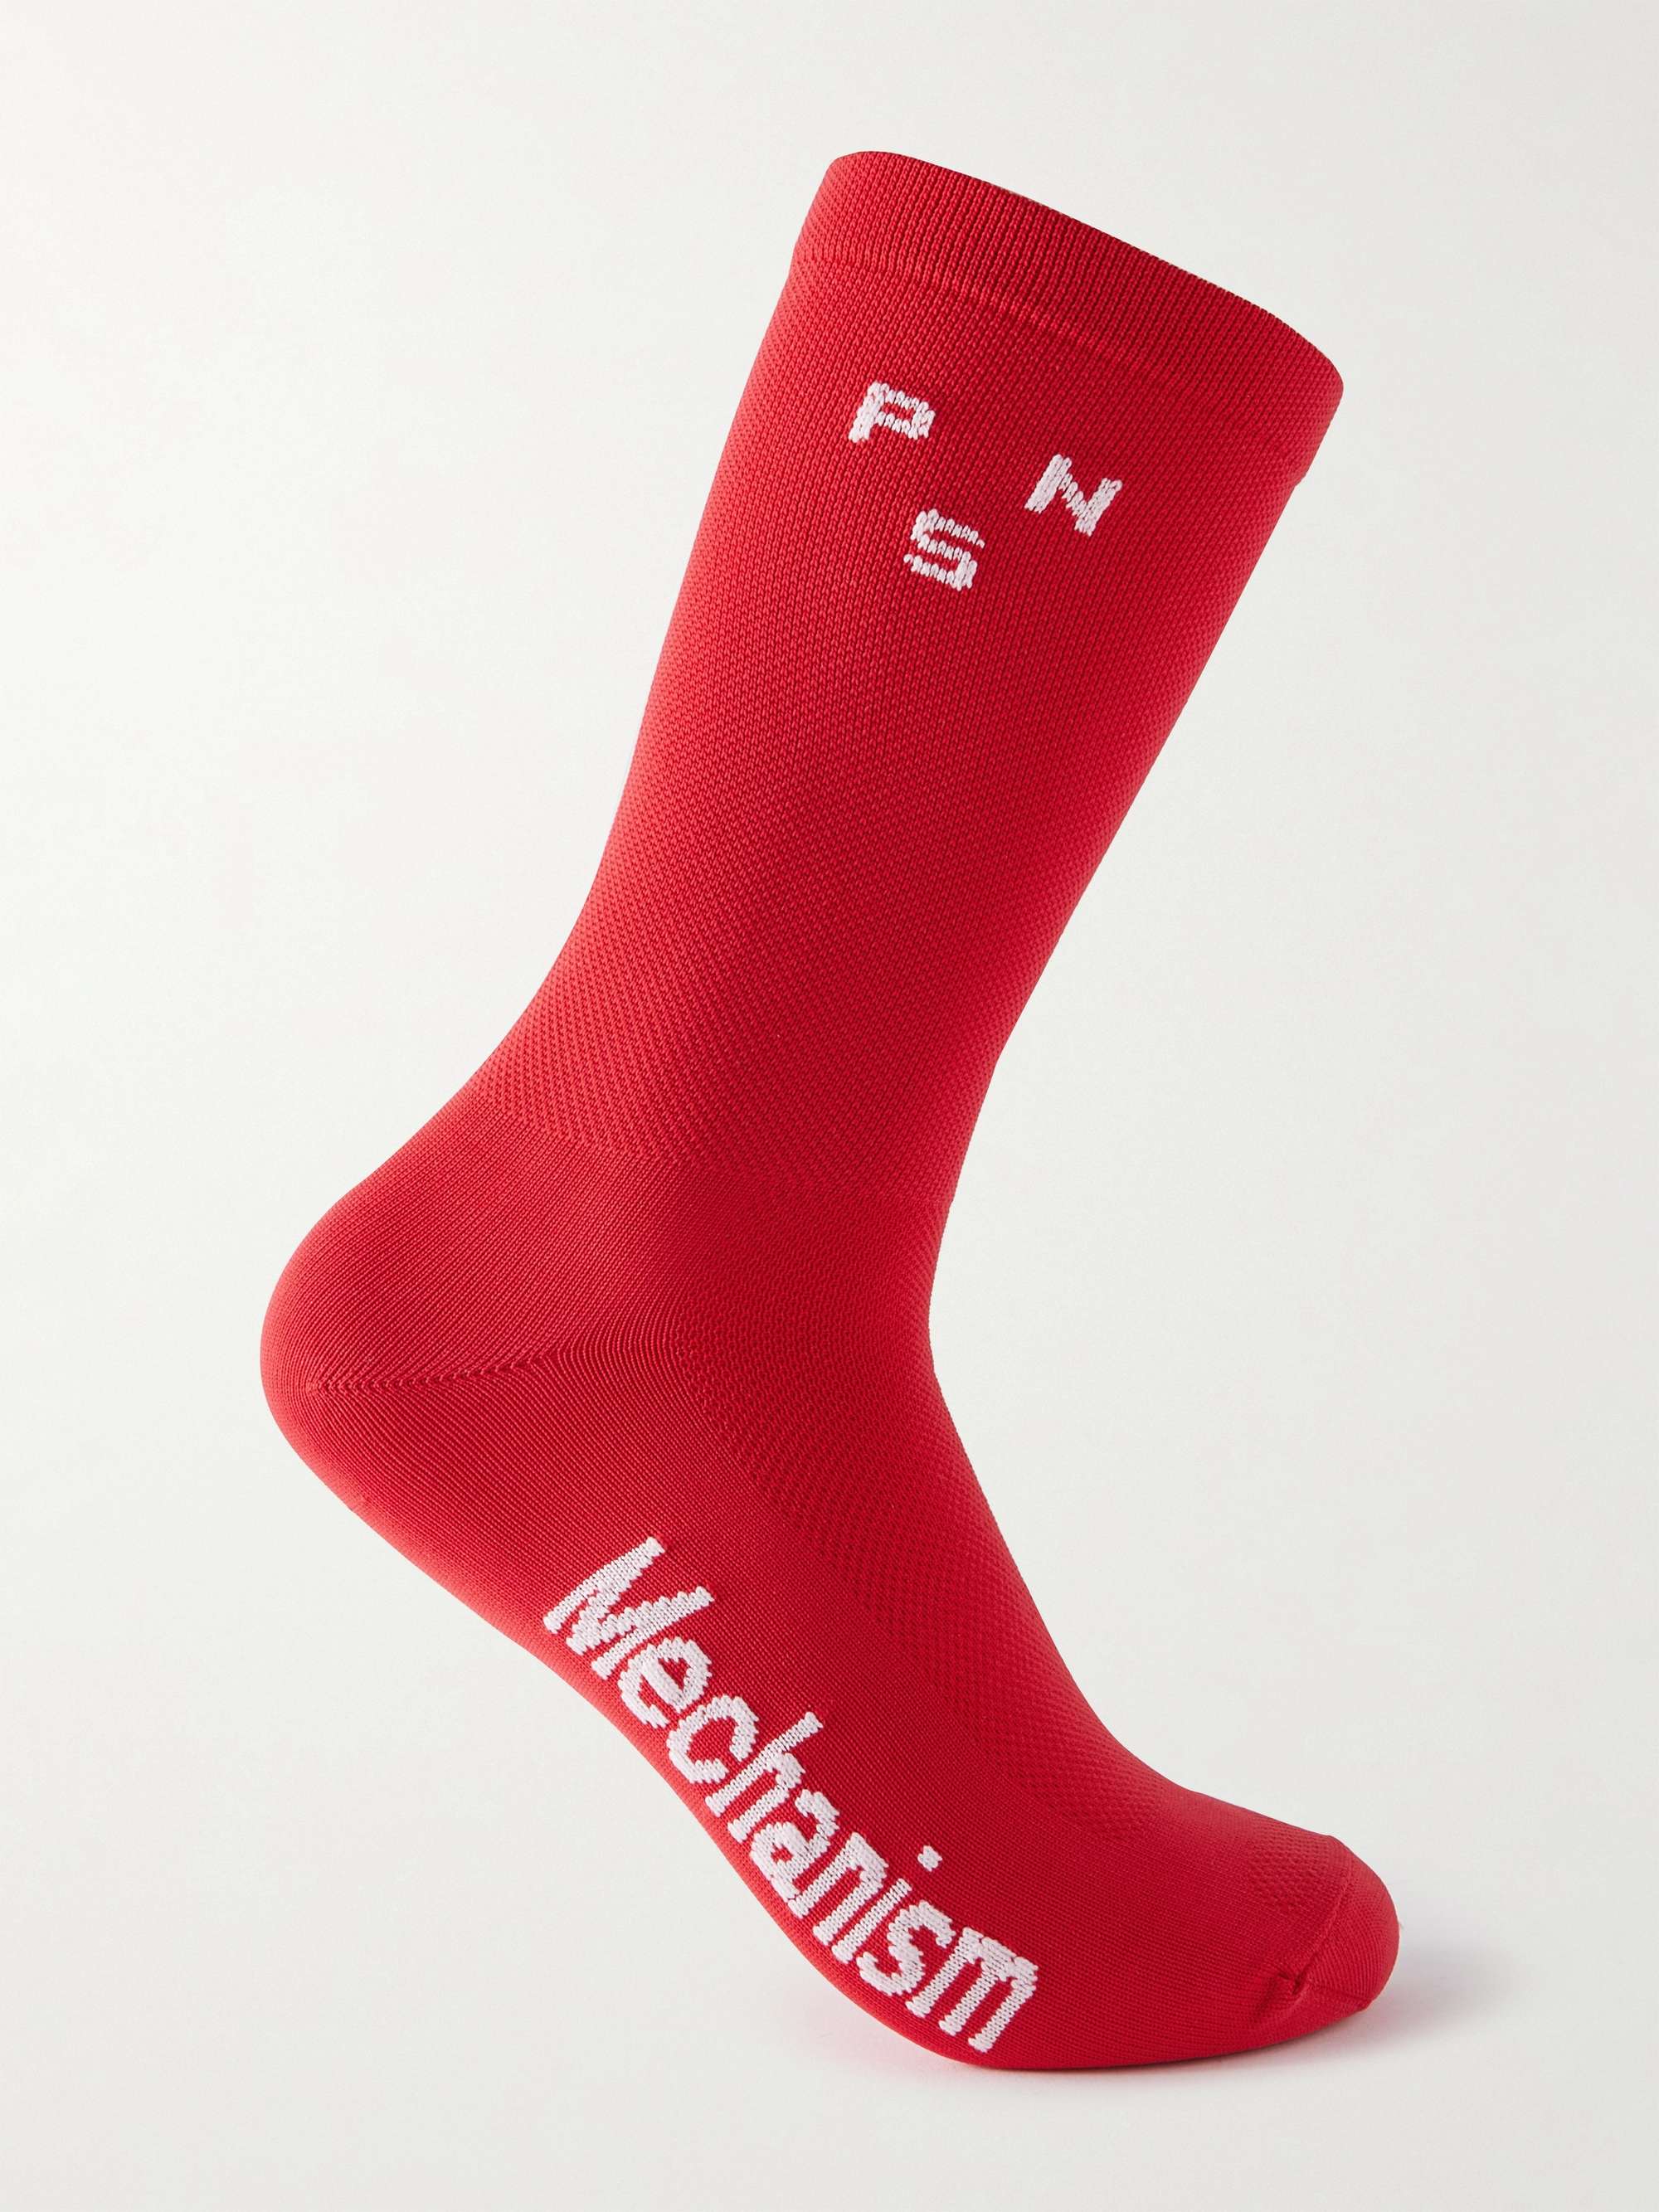 PAS NORMAL STUDIOS Mechanism Meryl Skinlife-Blend Cycling Socks